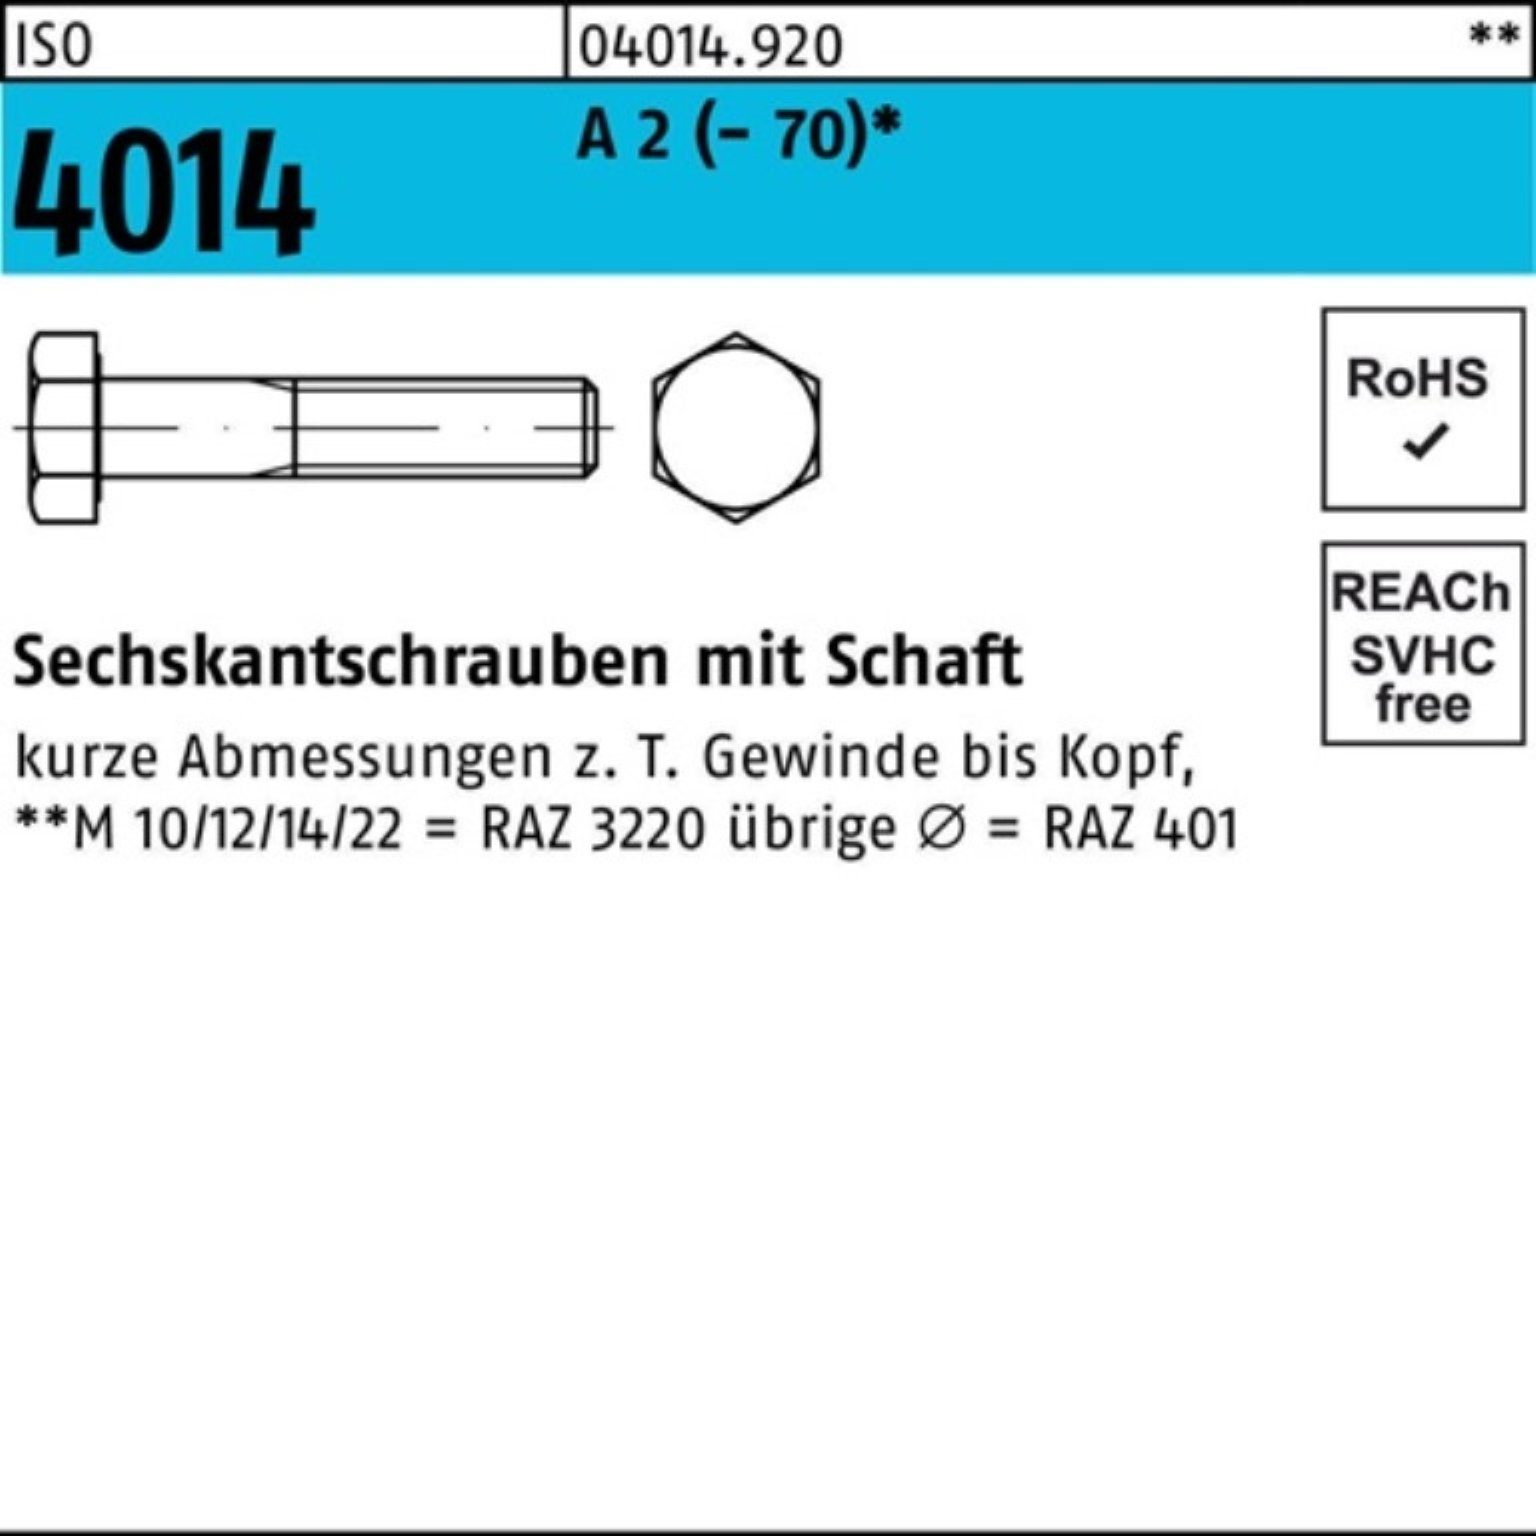 Bufab Sechskantschraube 100er Pack Sechskantschraube ISO 4014 Schaft M16x 150 A 2 (70) 1 St